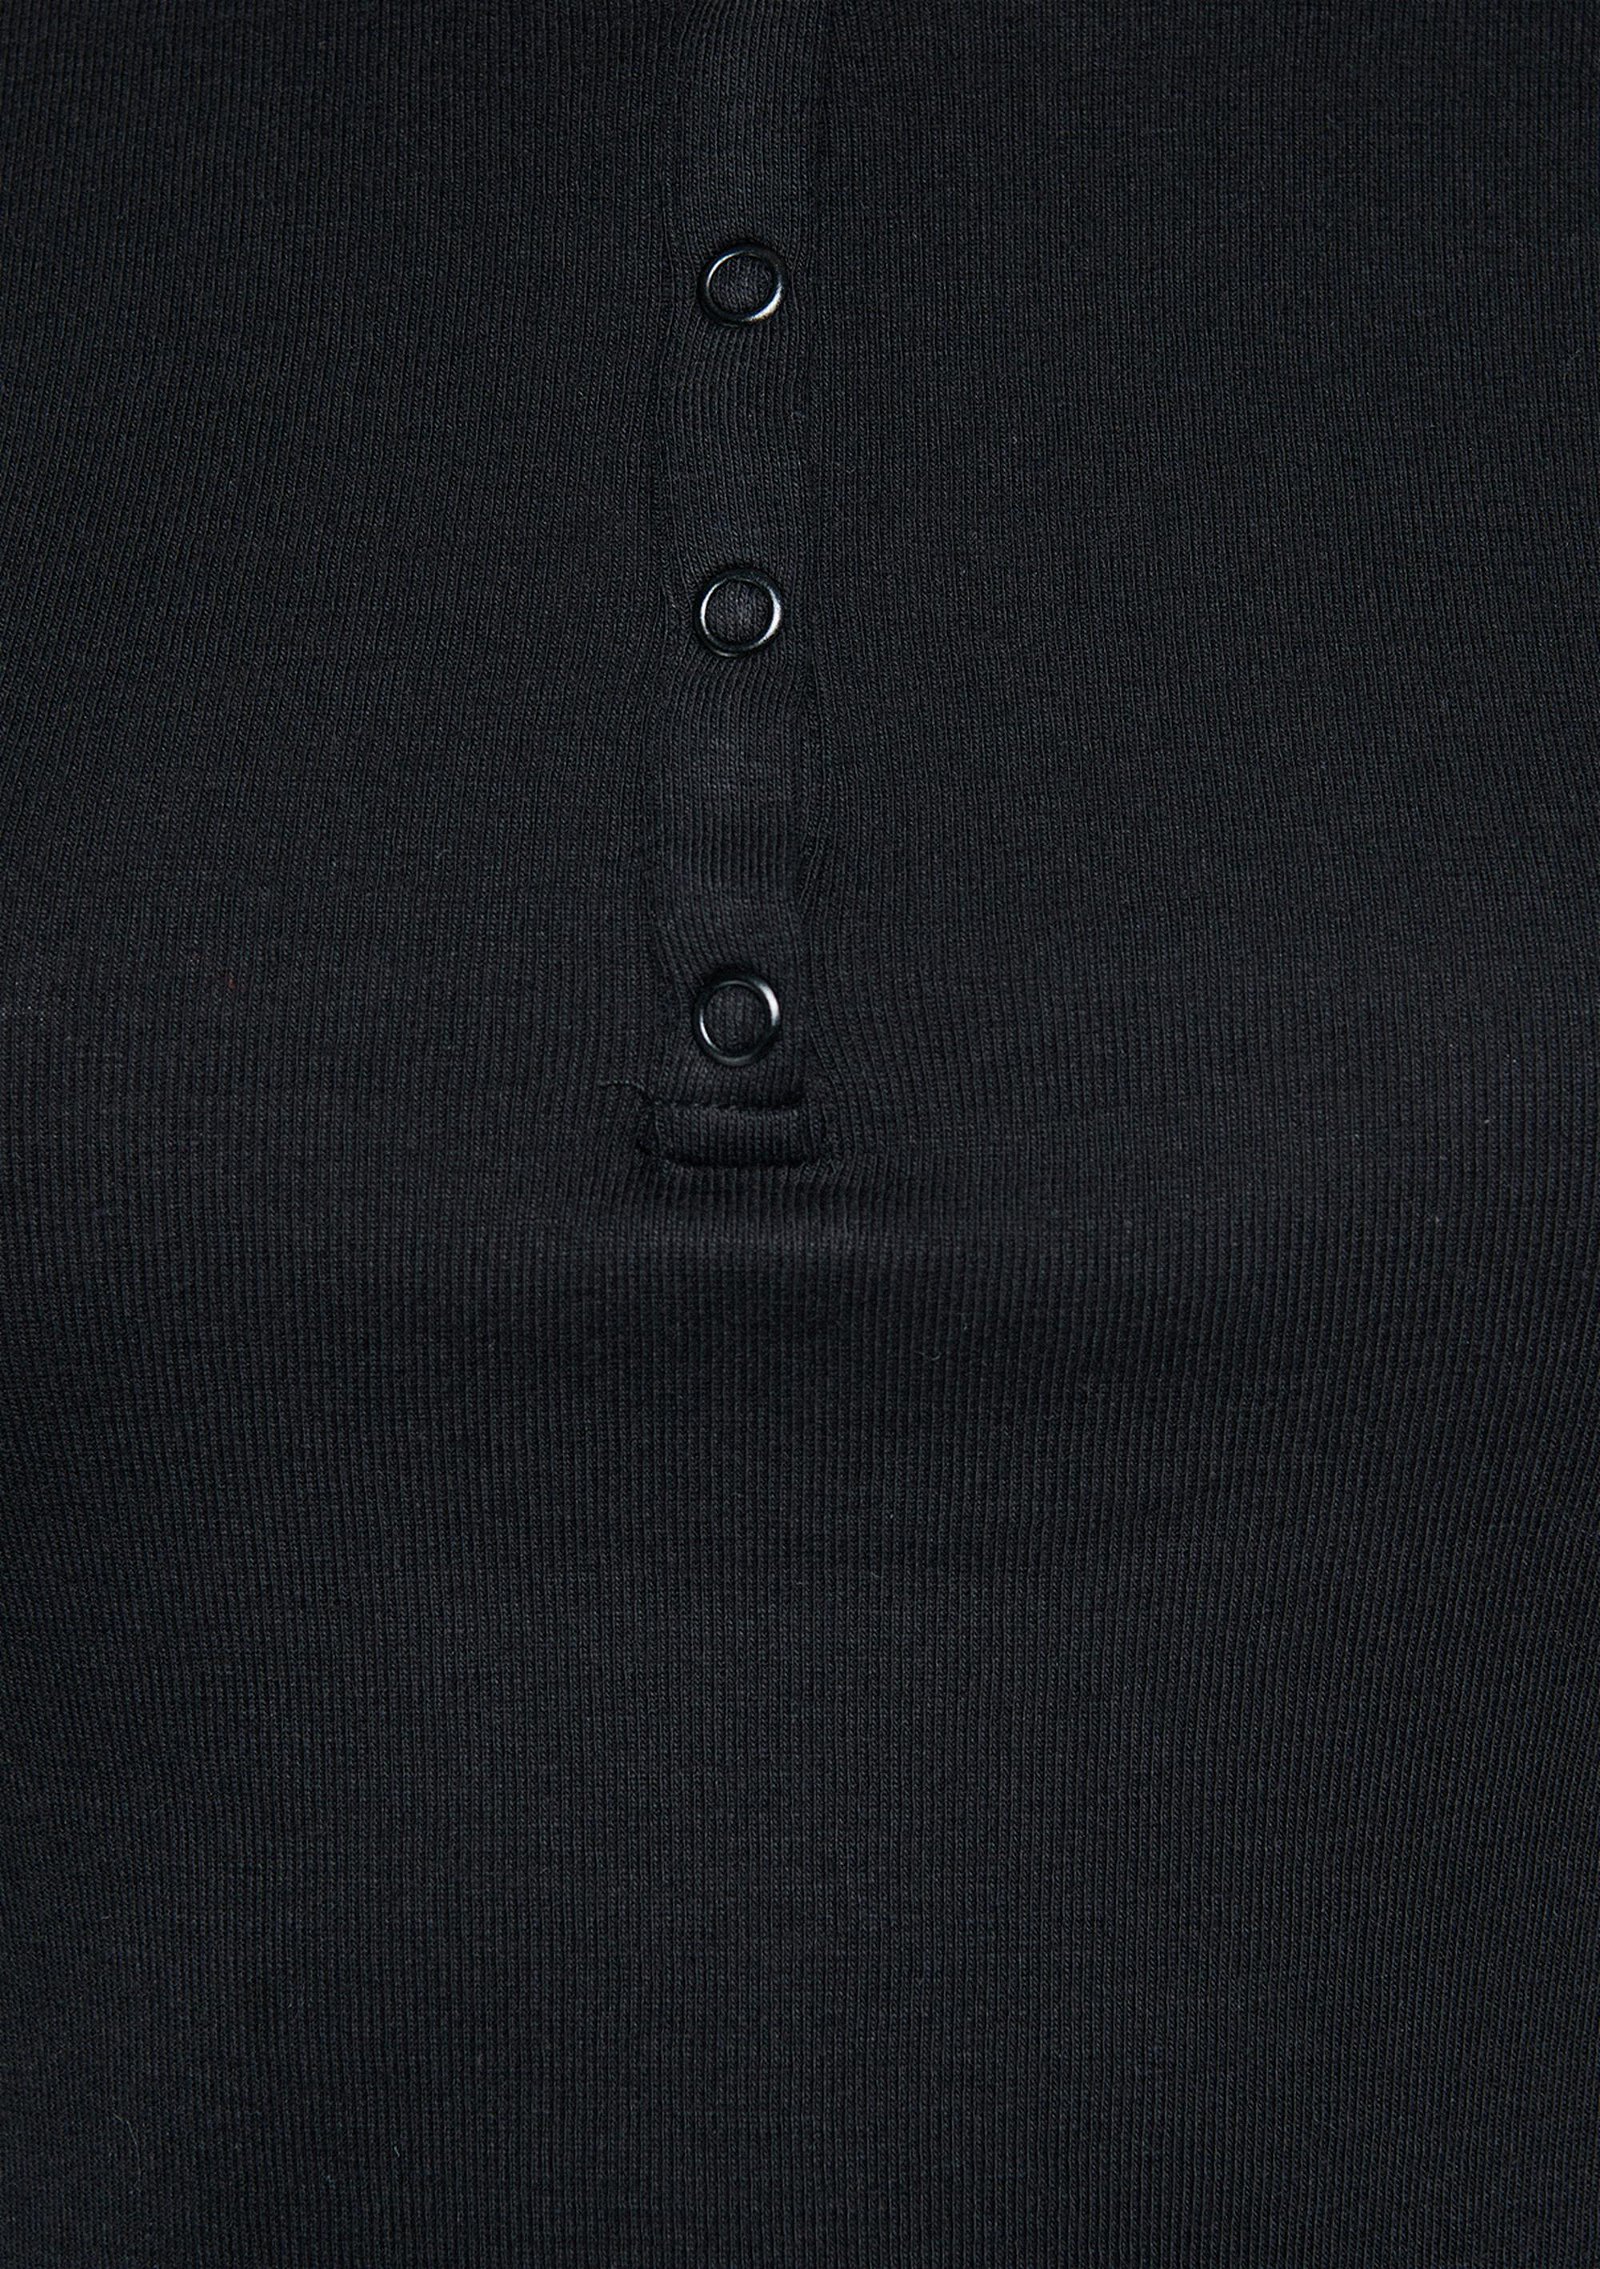 Mavi Düğmeli Siyah Basic Tişört Crop / Kısa Kesim 1611639-900